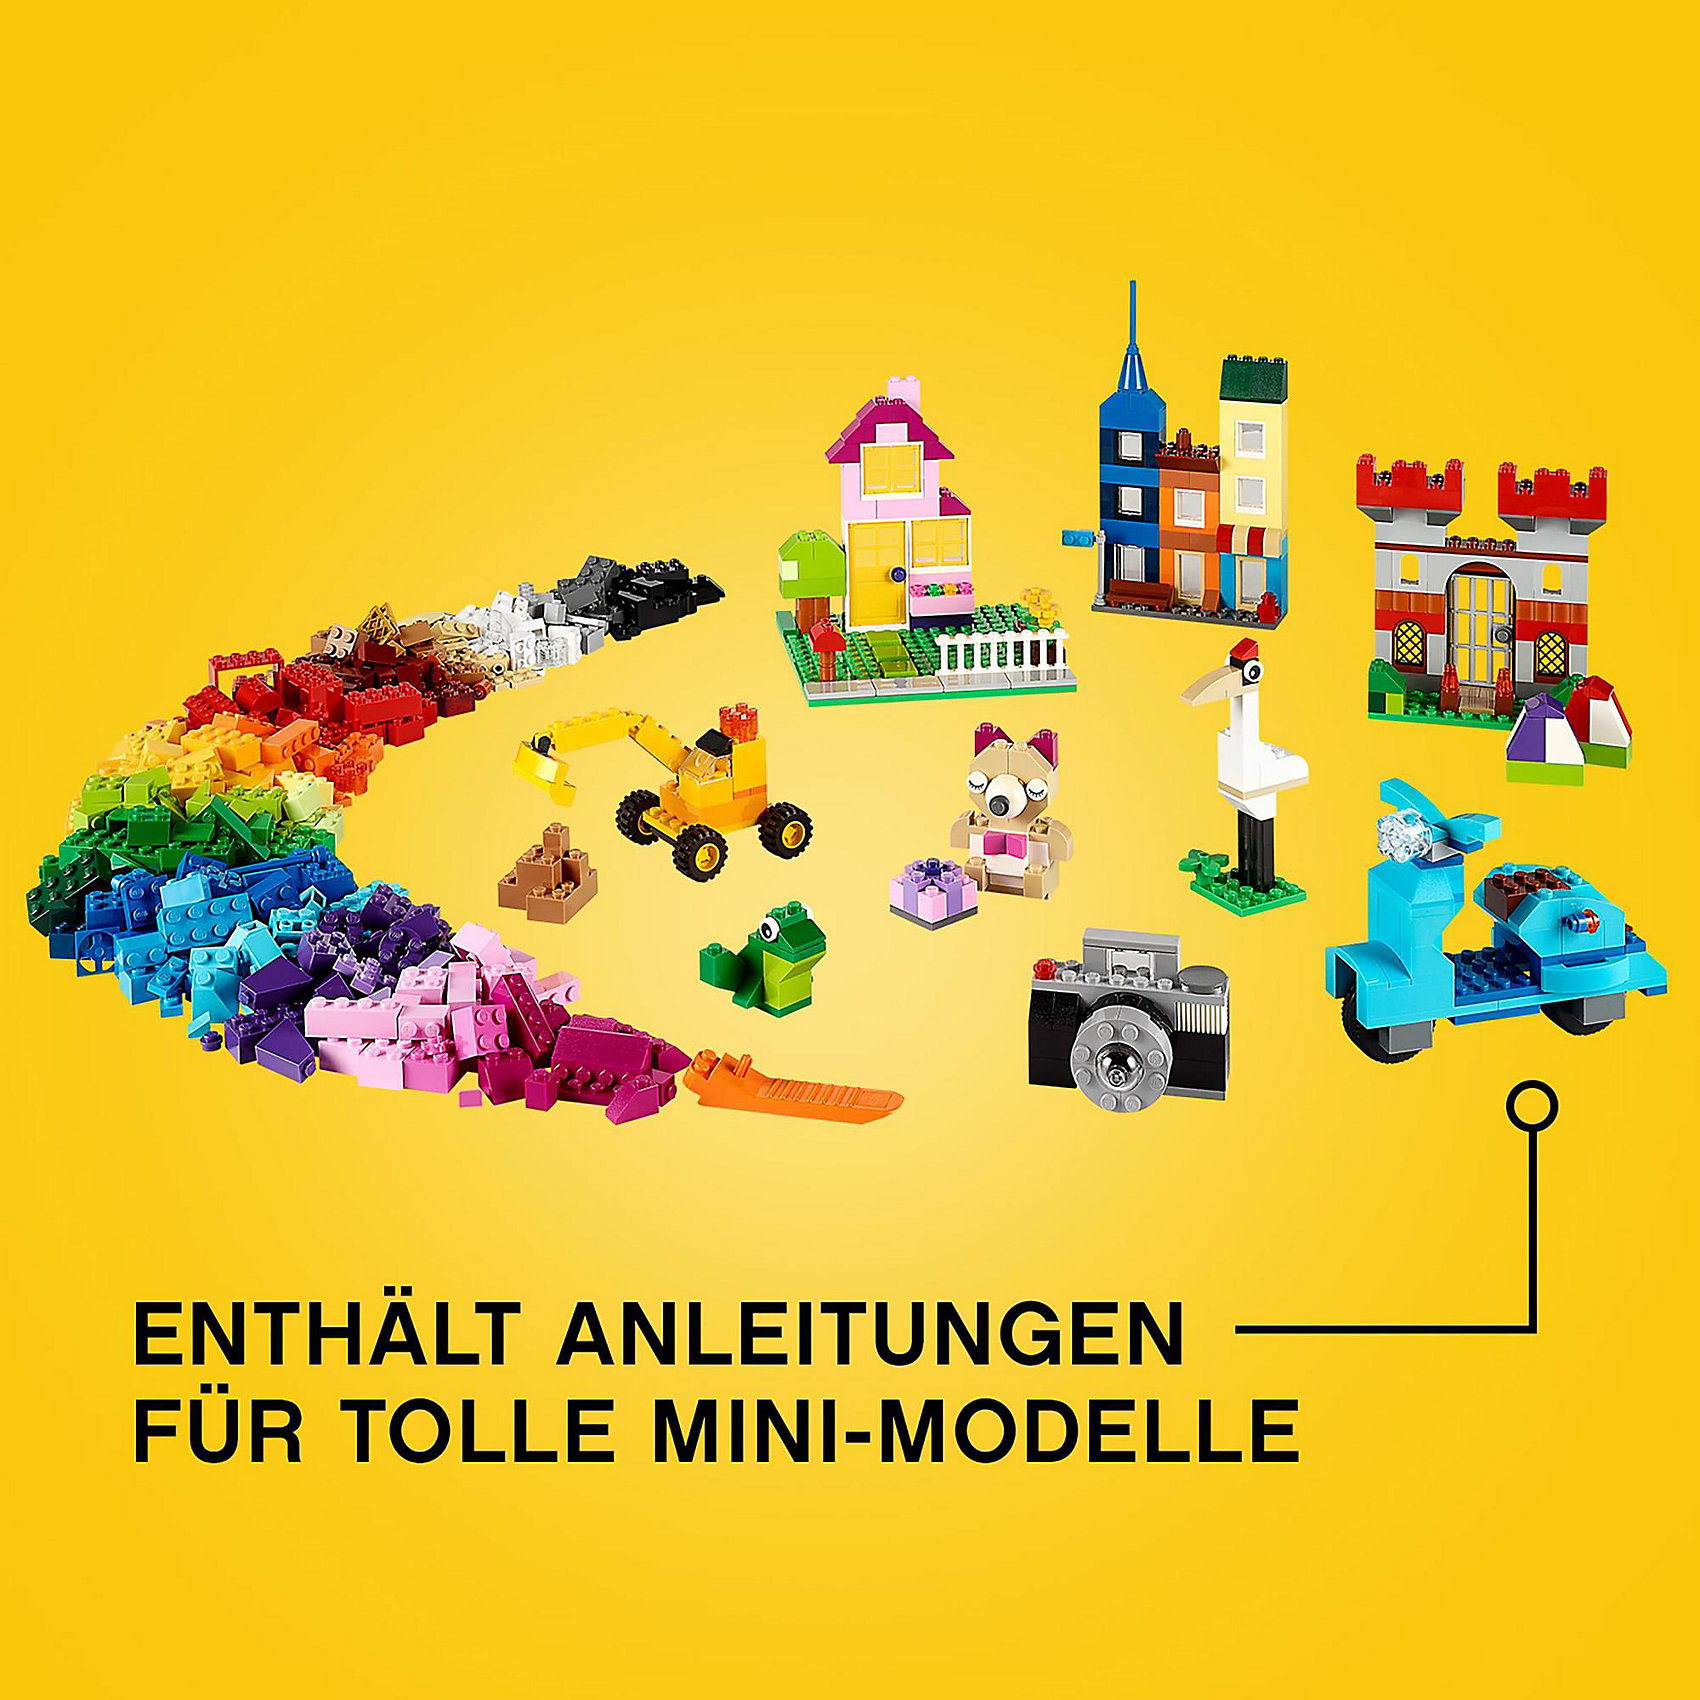 фото LEGO 10698: Набор для творчества большого размера